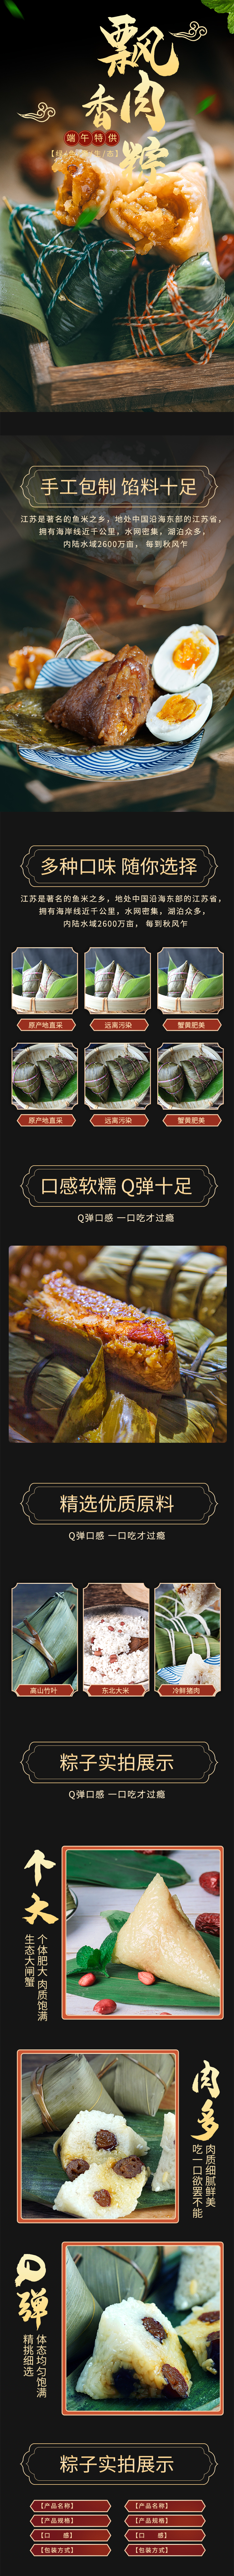 传统端午节飘香肉粽黑棕简约大气电商详情页图片